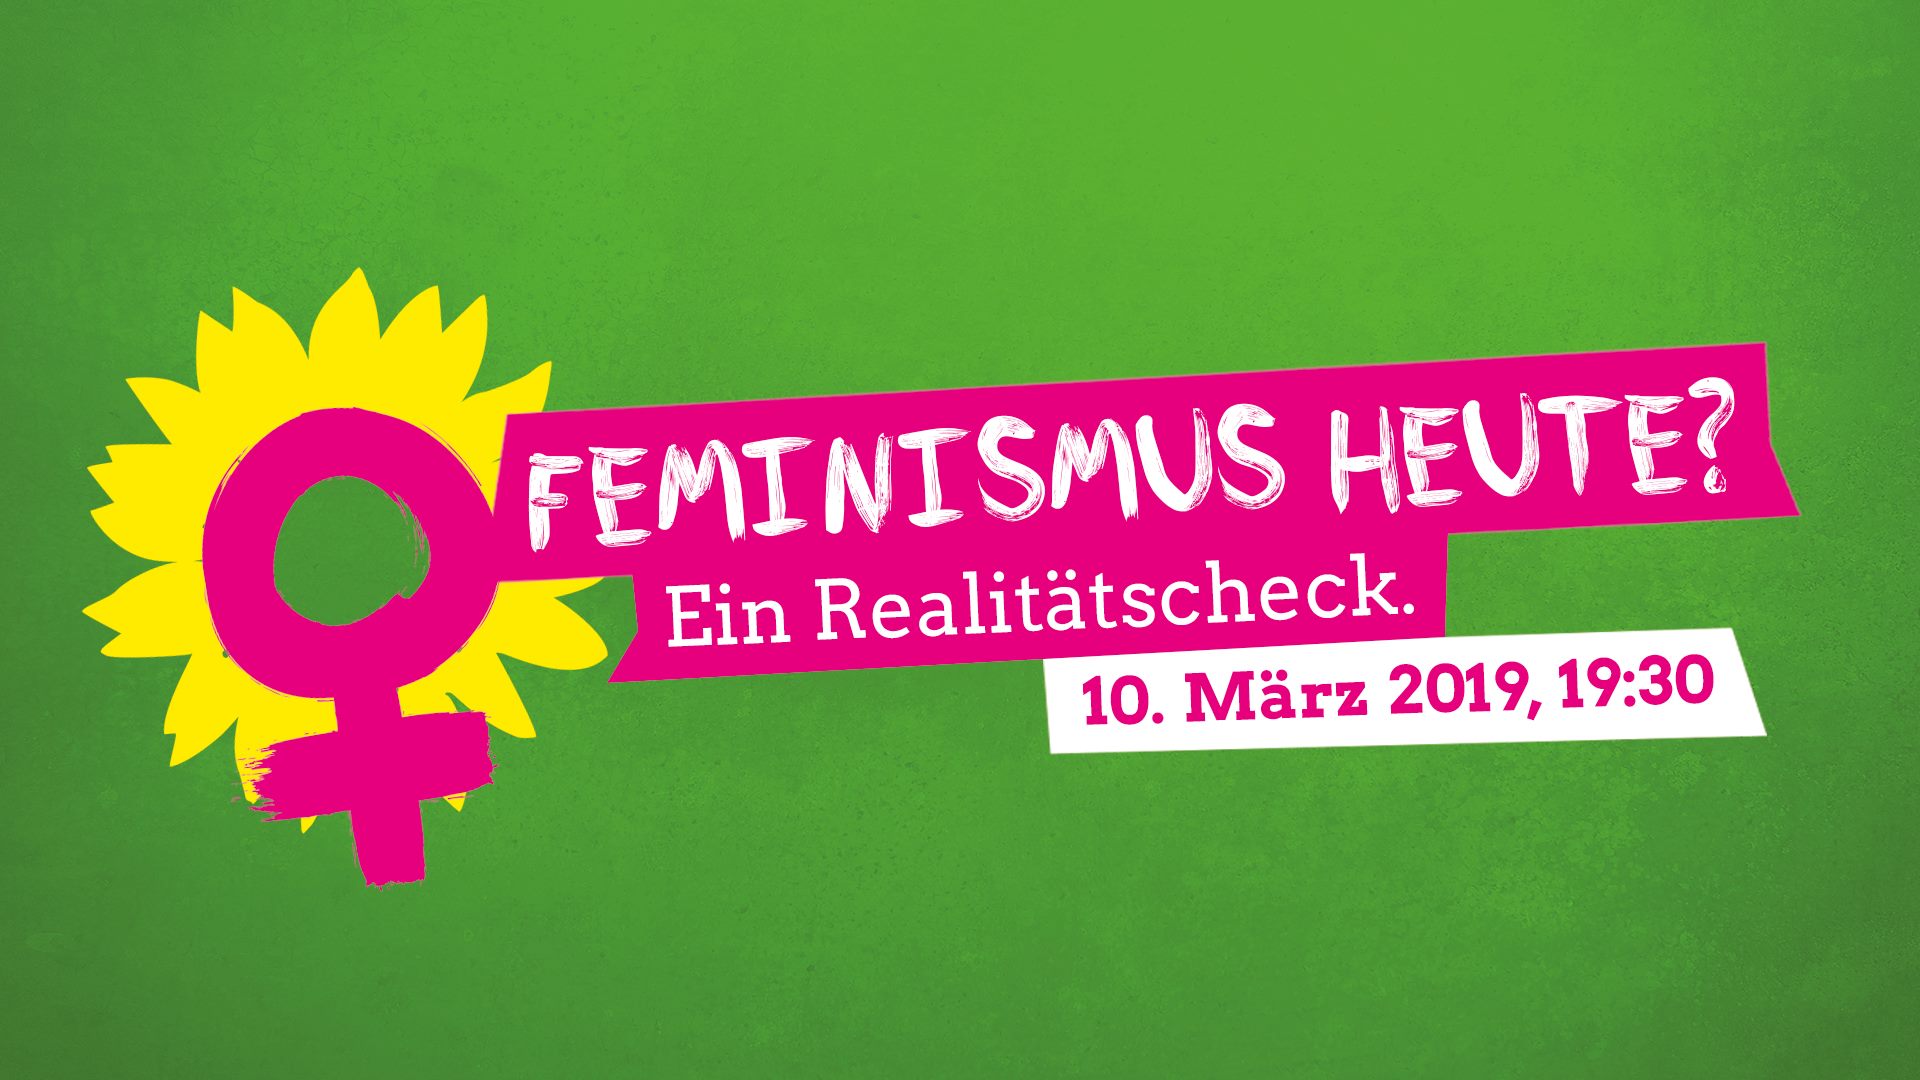 Feminismus heute. Ein Realitätscheck. 10. März 2019, 19:30